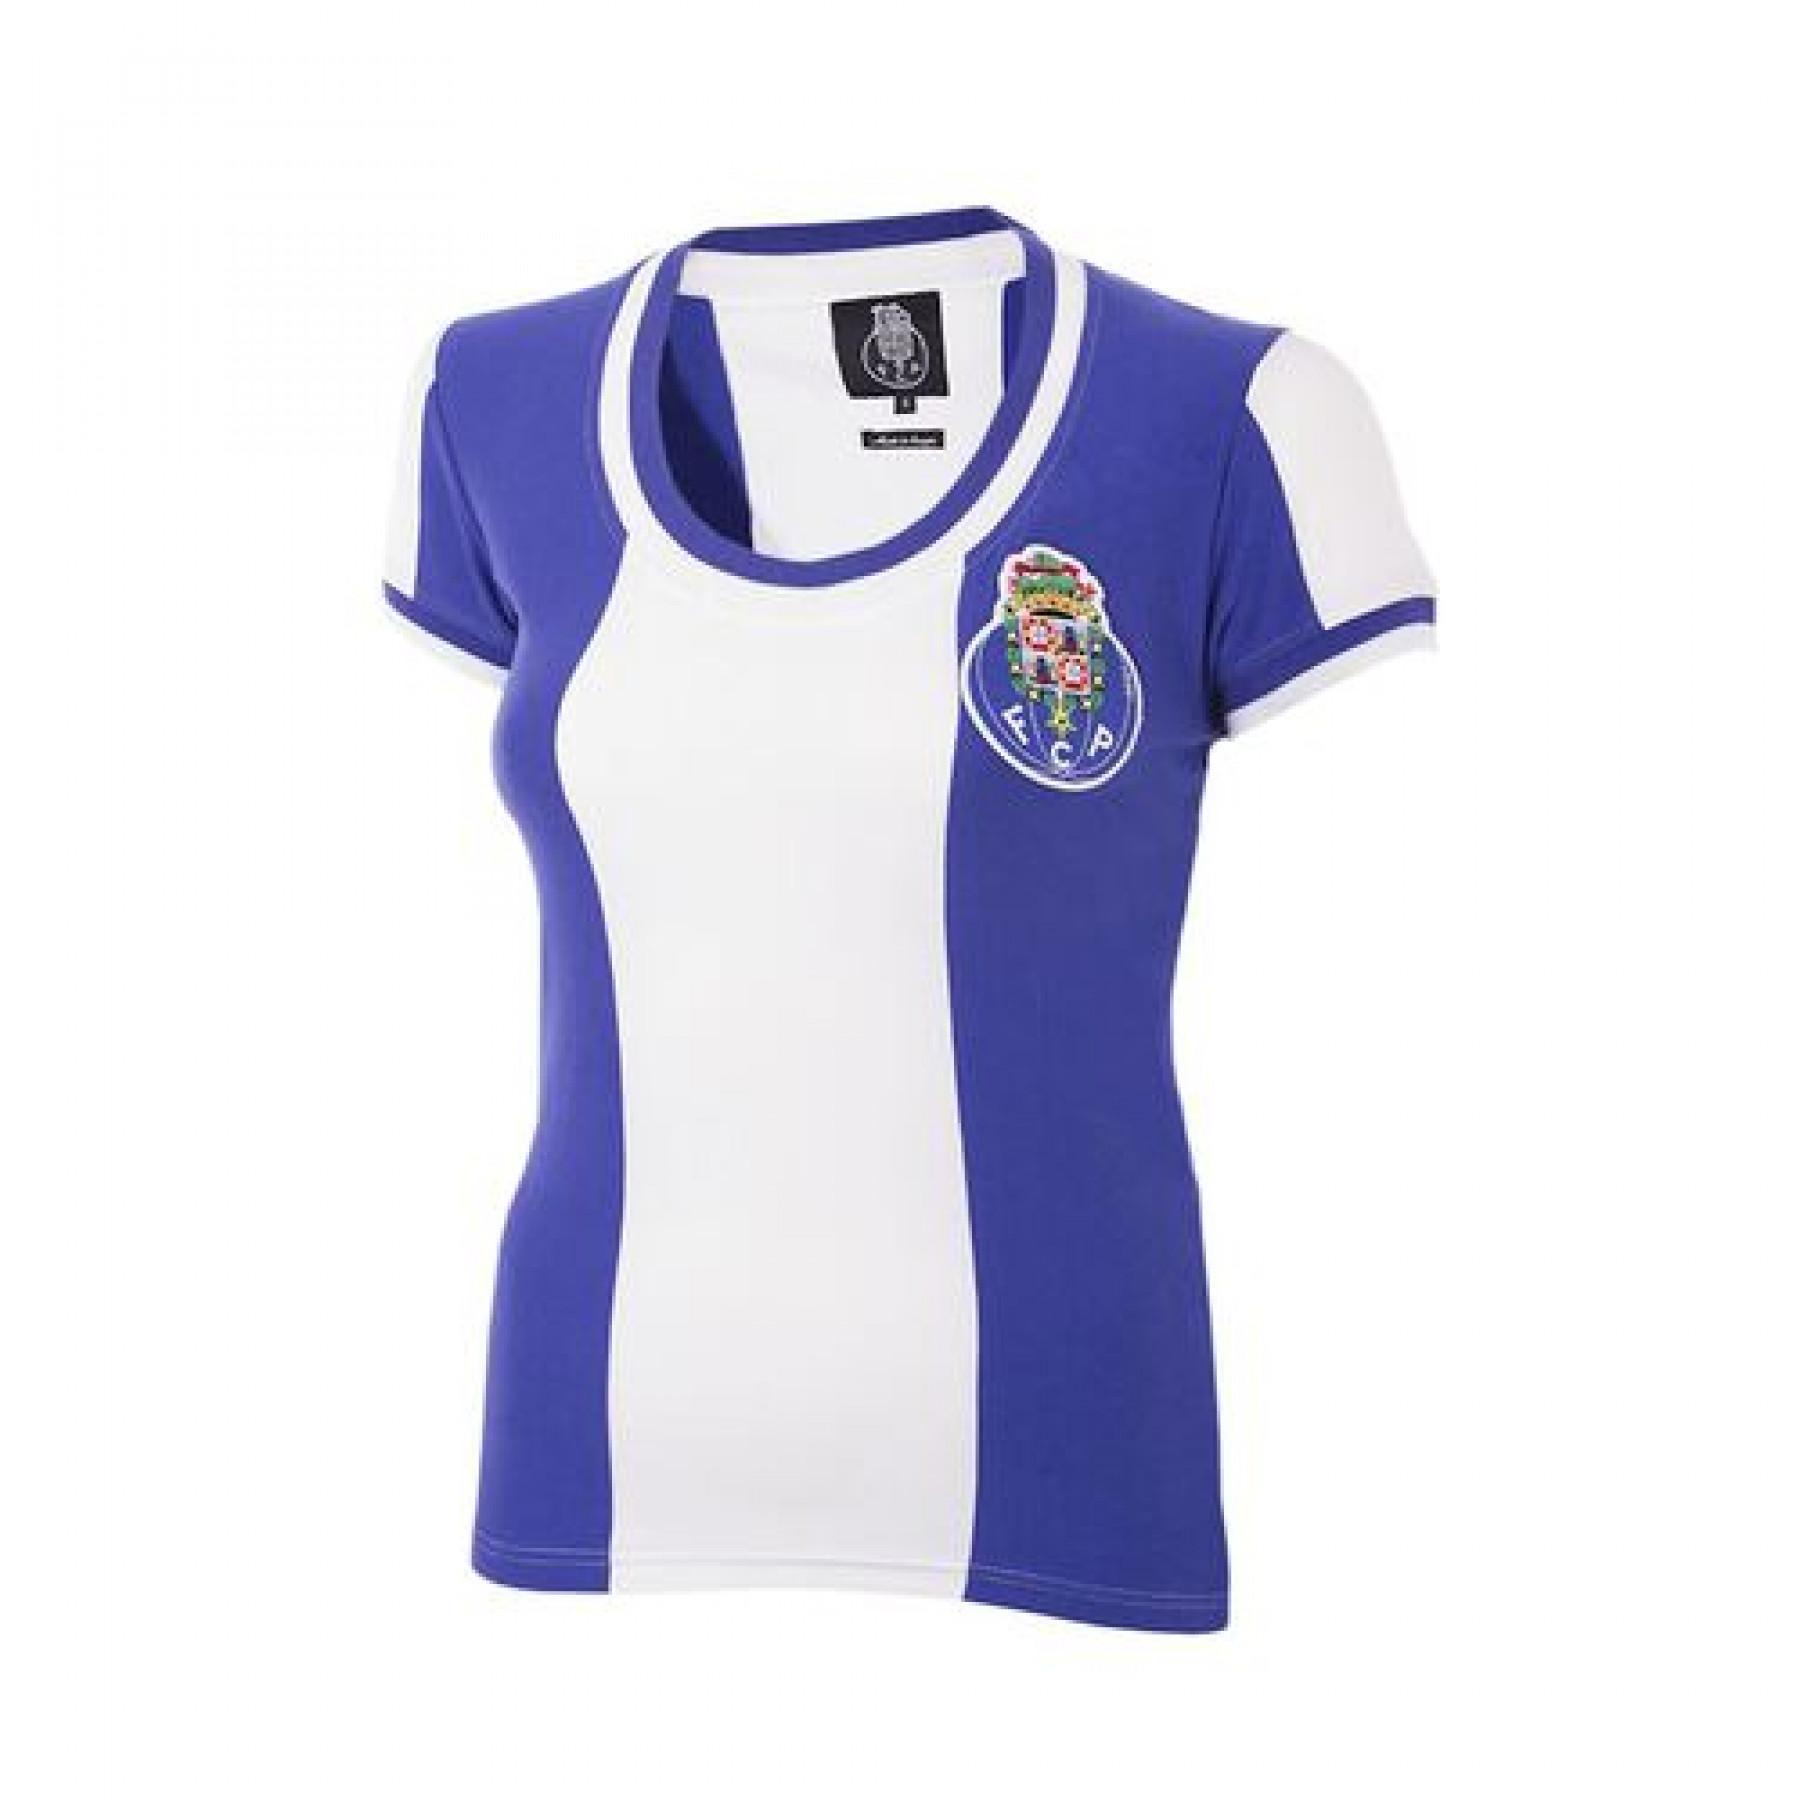 Camisola feminina Copa Football FC Porto 1971 - 72 Retro